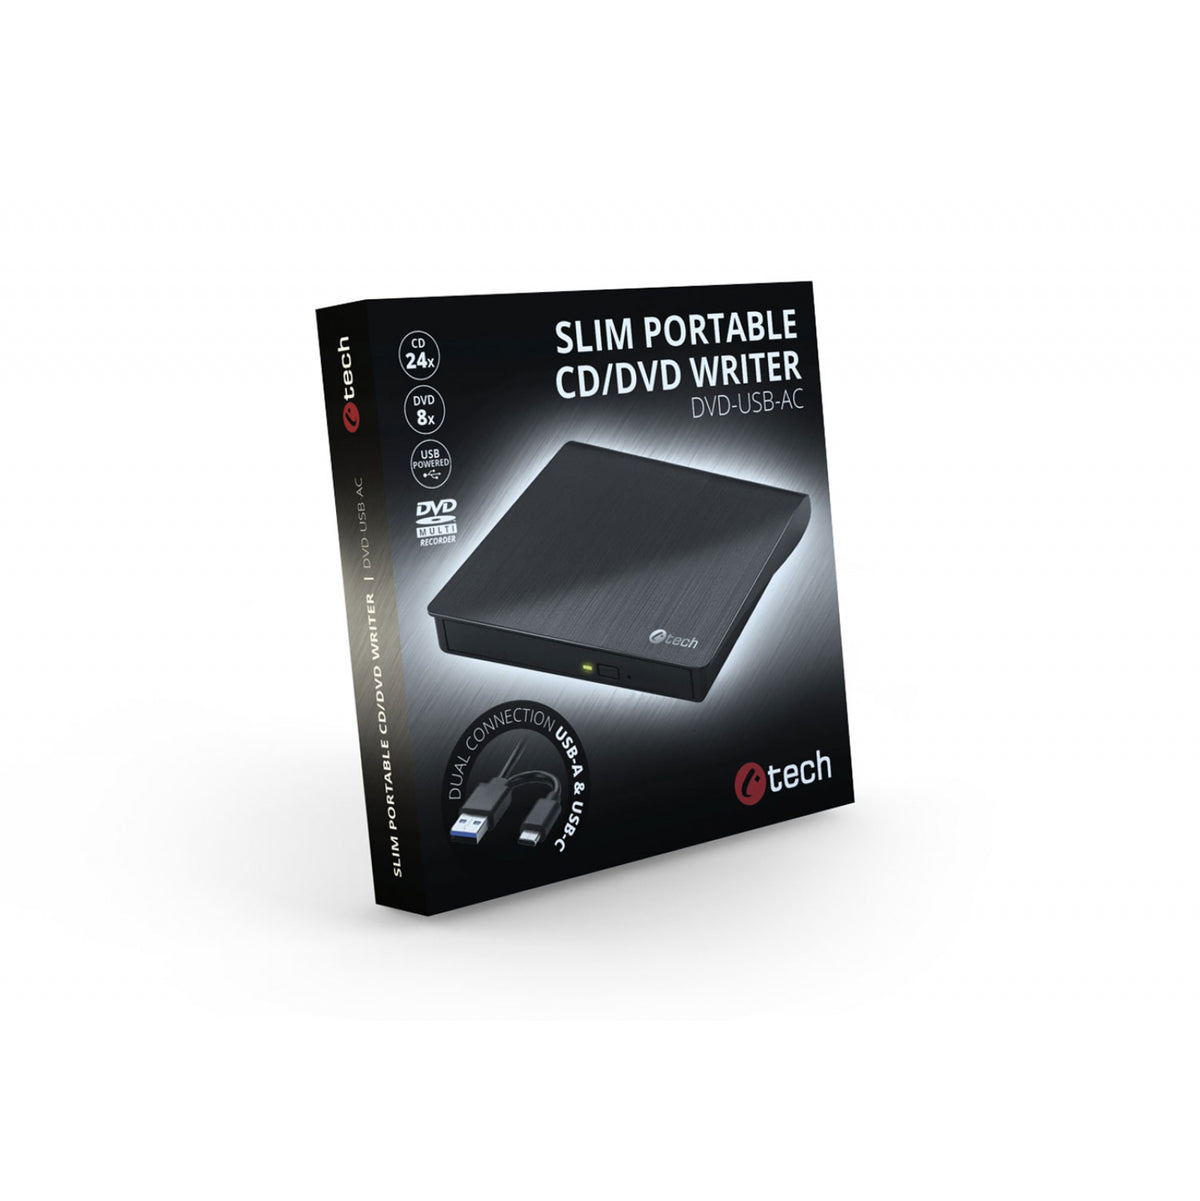 Externí DVD vypalovačka C-tech DVD-USB-AC, USB 2.0, USB A/Type C